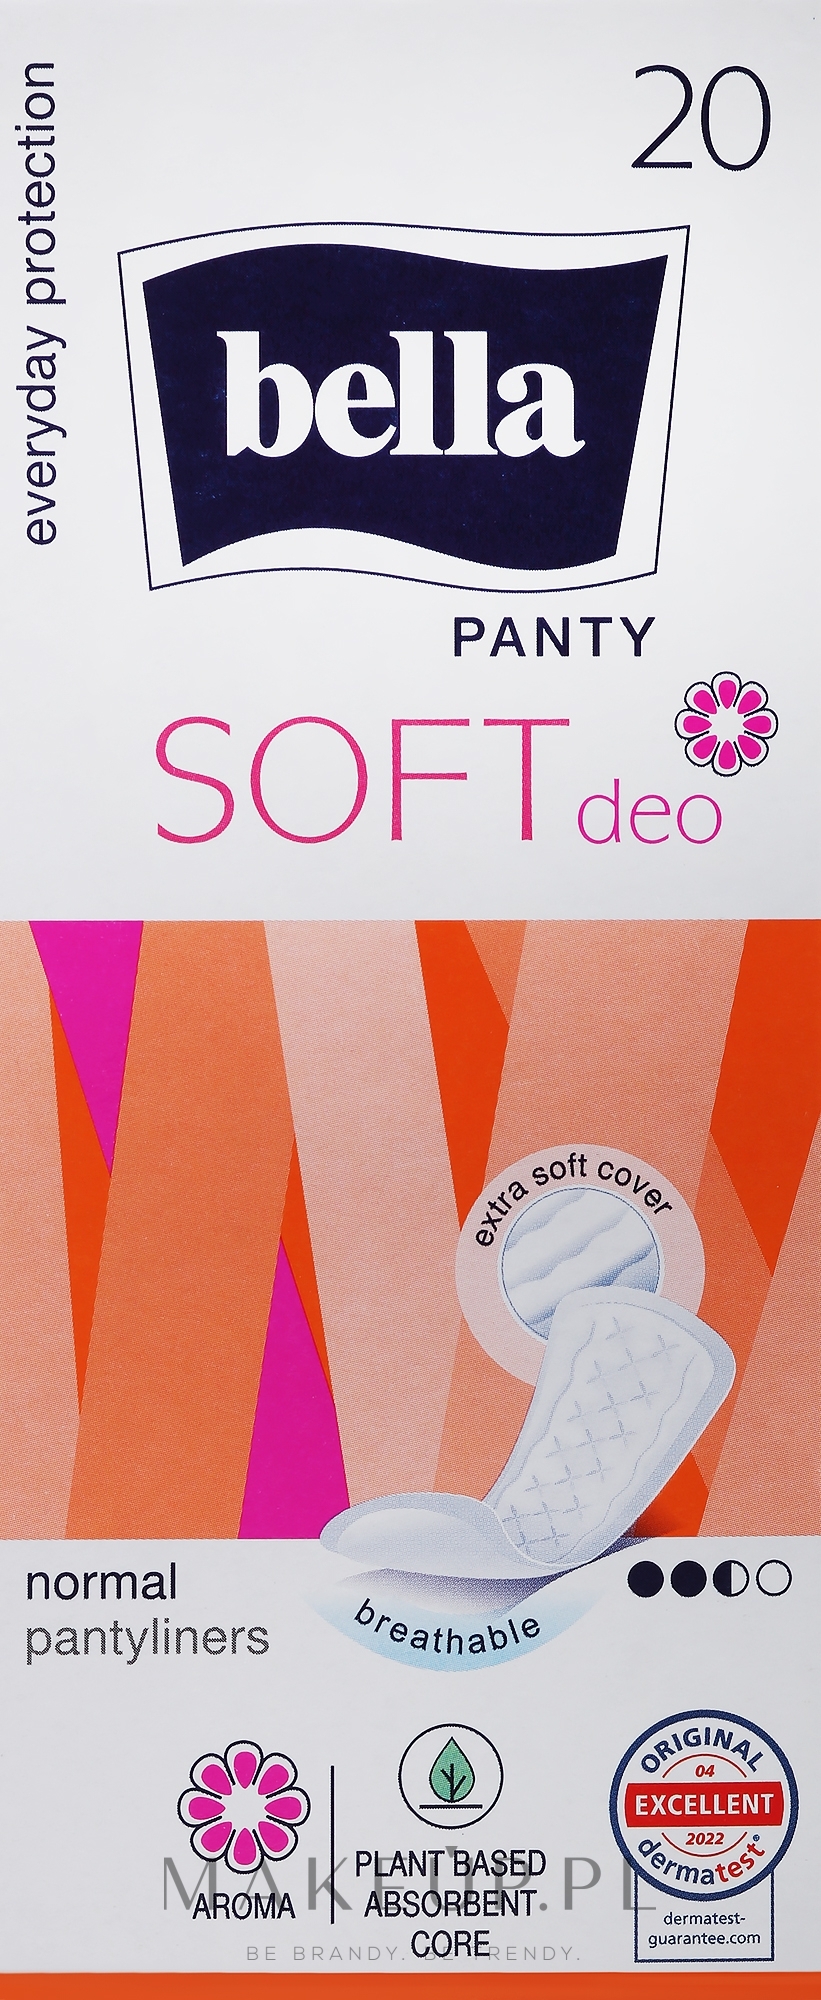 Wkładki higieniczne Panty Soft Deo Fresh, 20 szt. - Bella — Zdjęcie 20 szt.